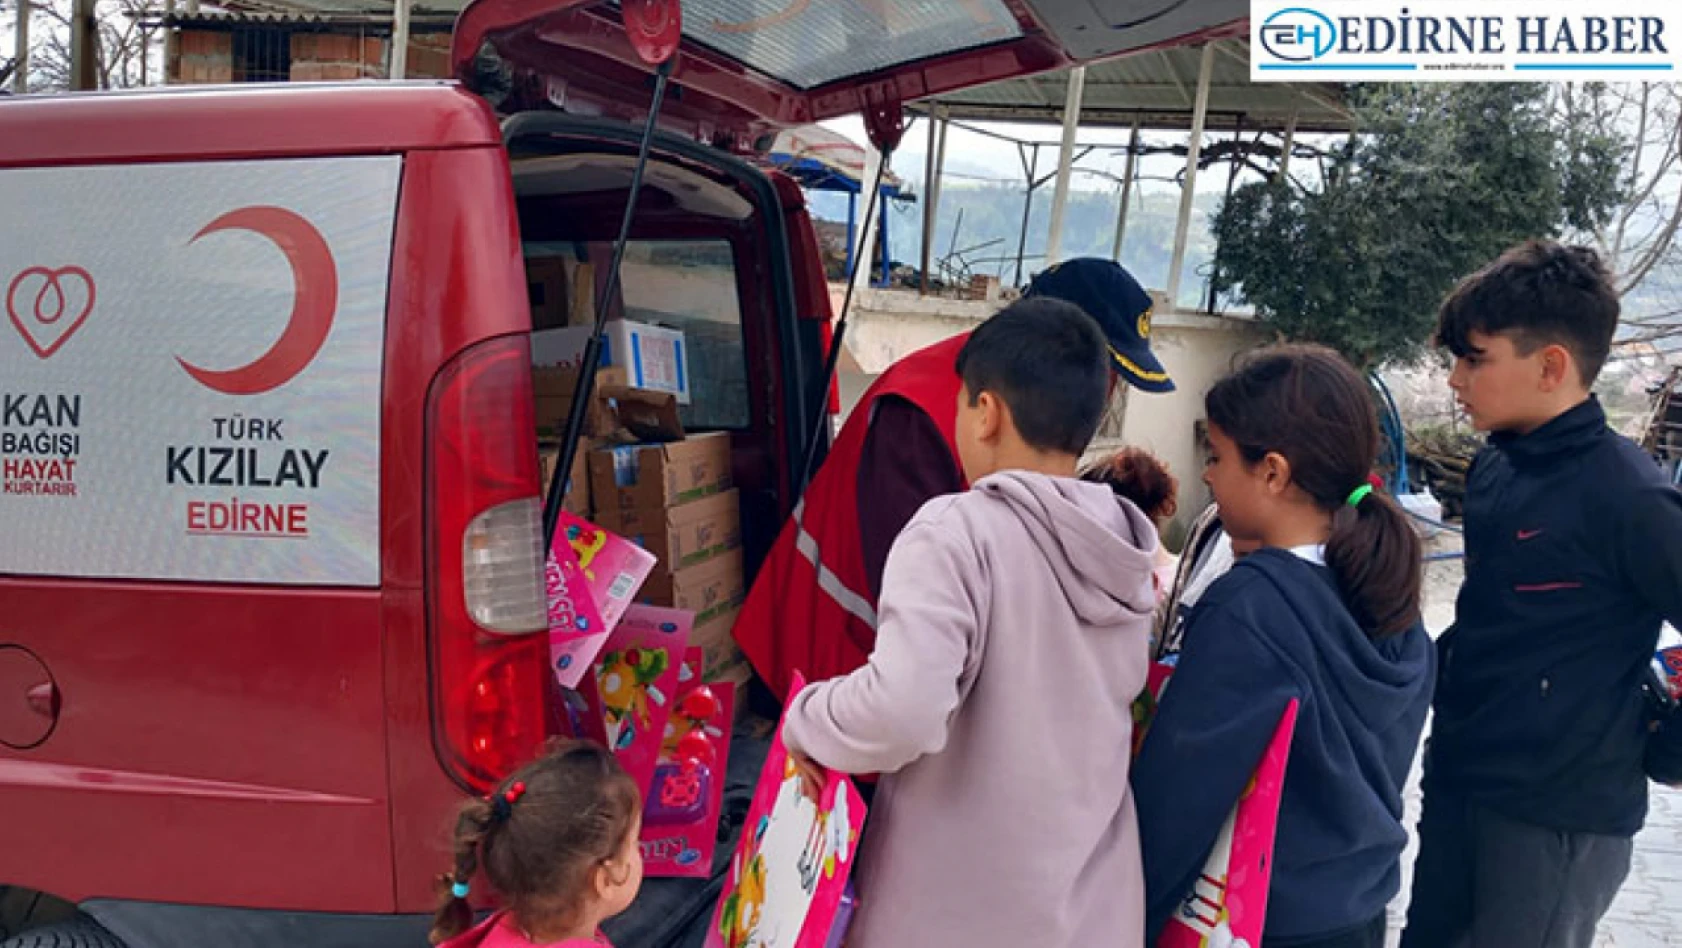 Edirne'den giden Türk Kızılay gönüllüleri, yaraların sarılmasına katkı sağlıyor